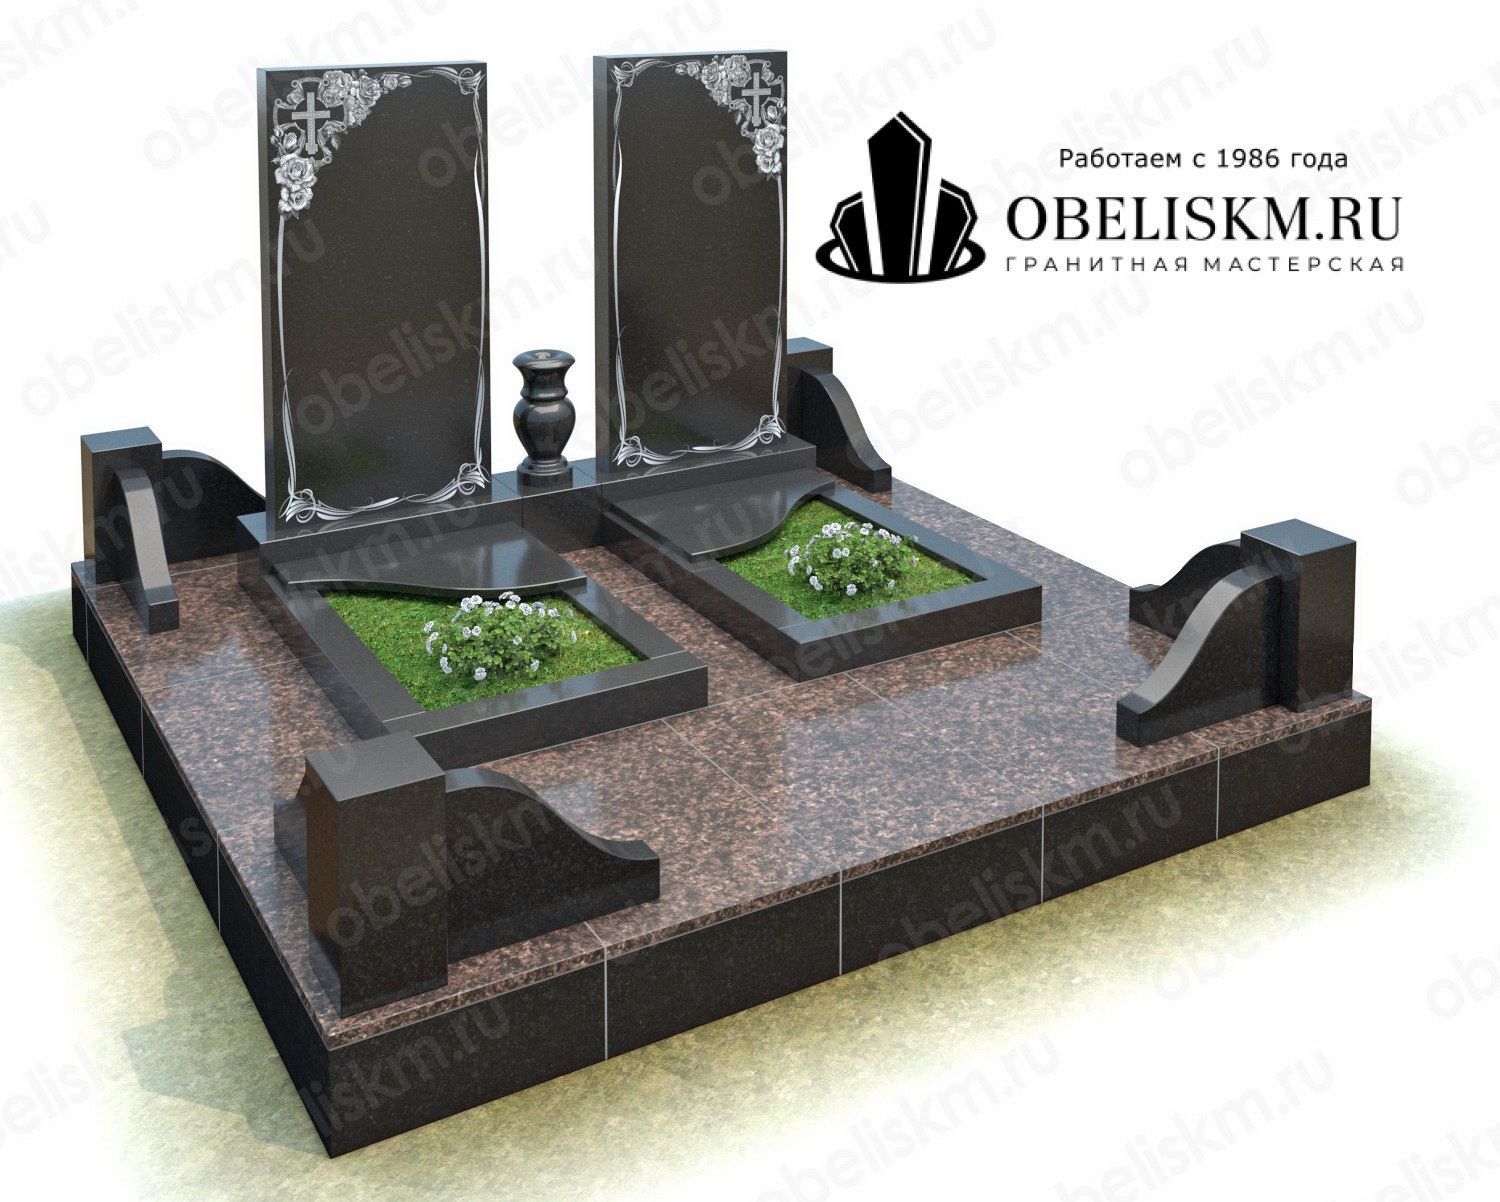 Особенности оформления современных памятников на могилу